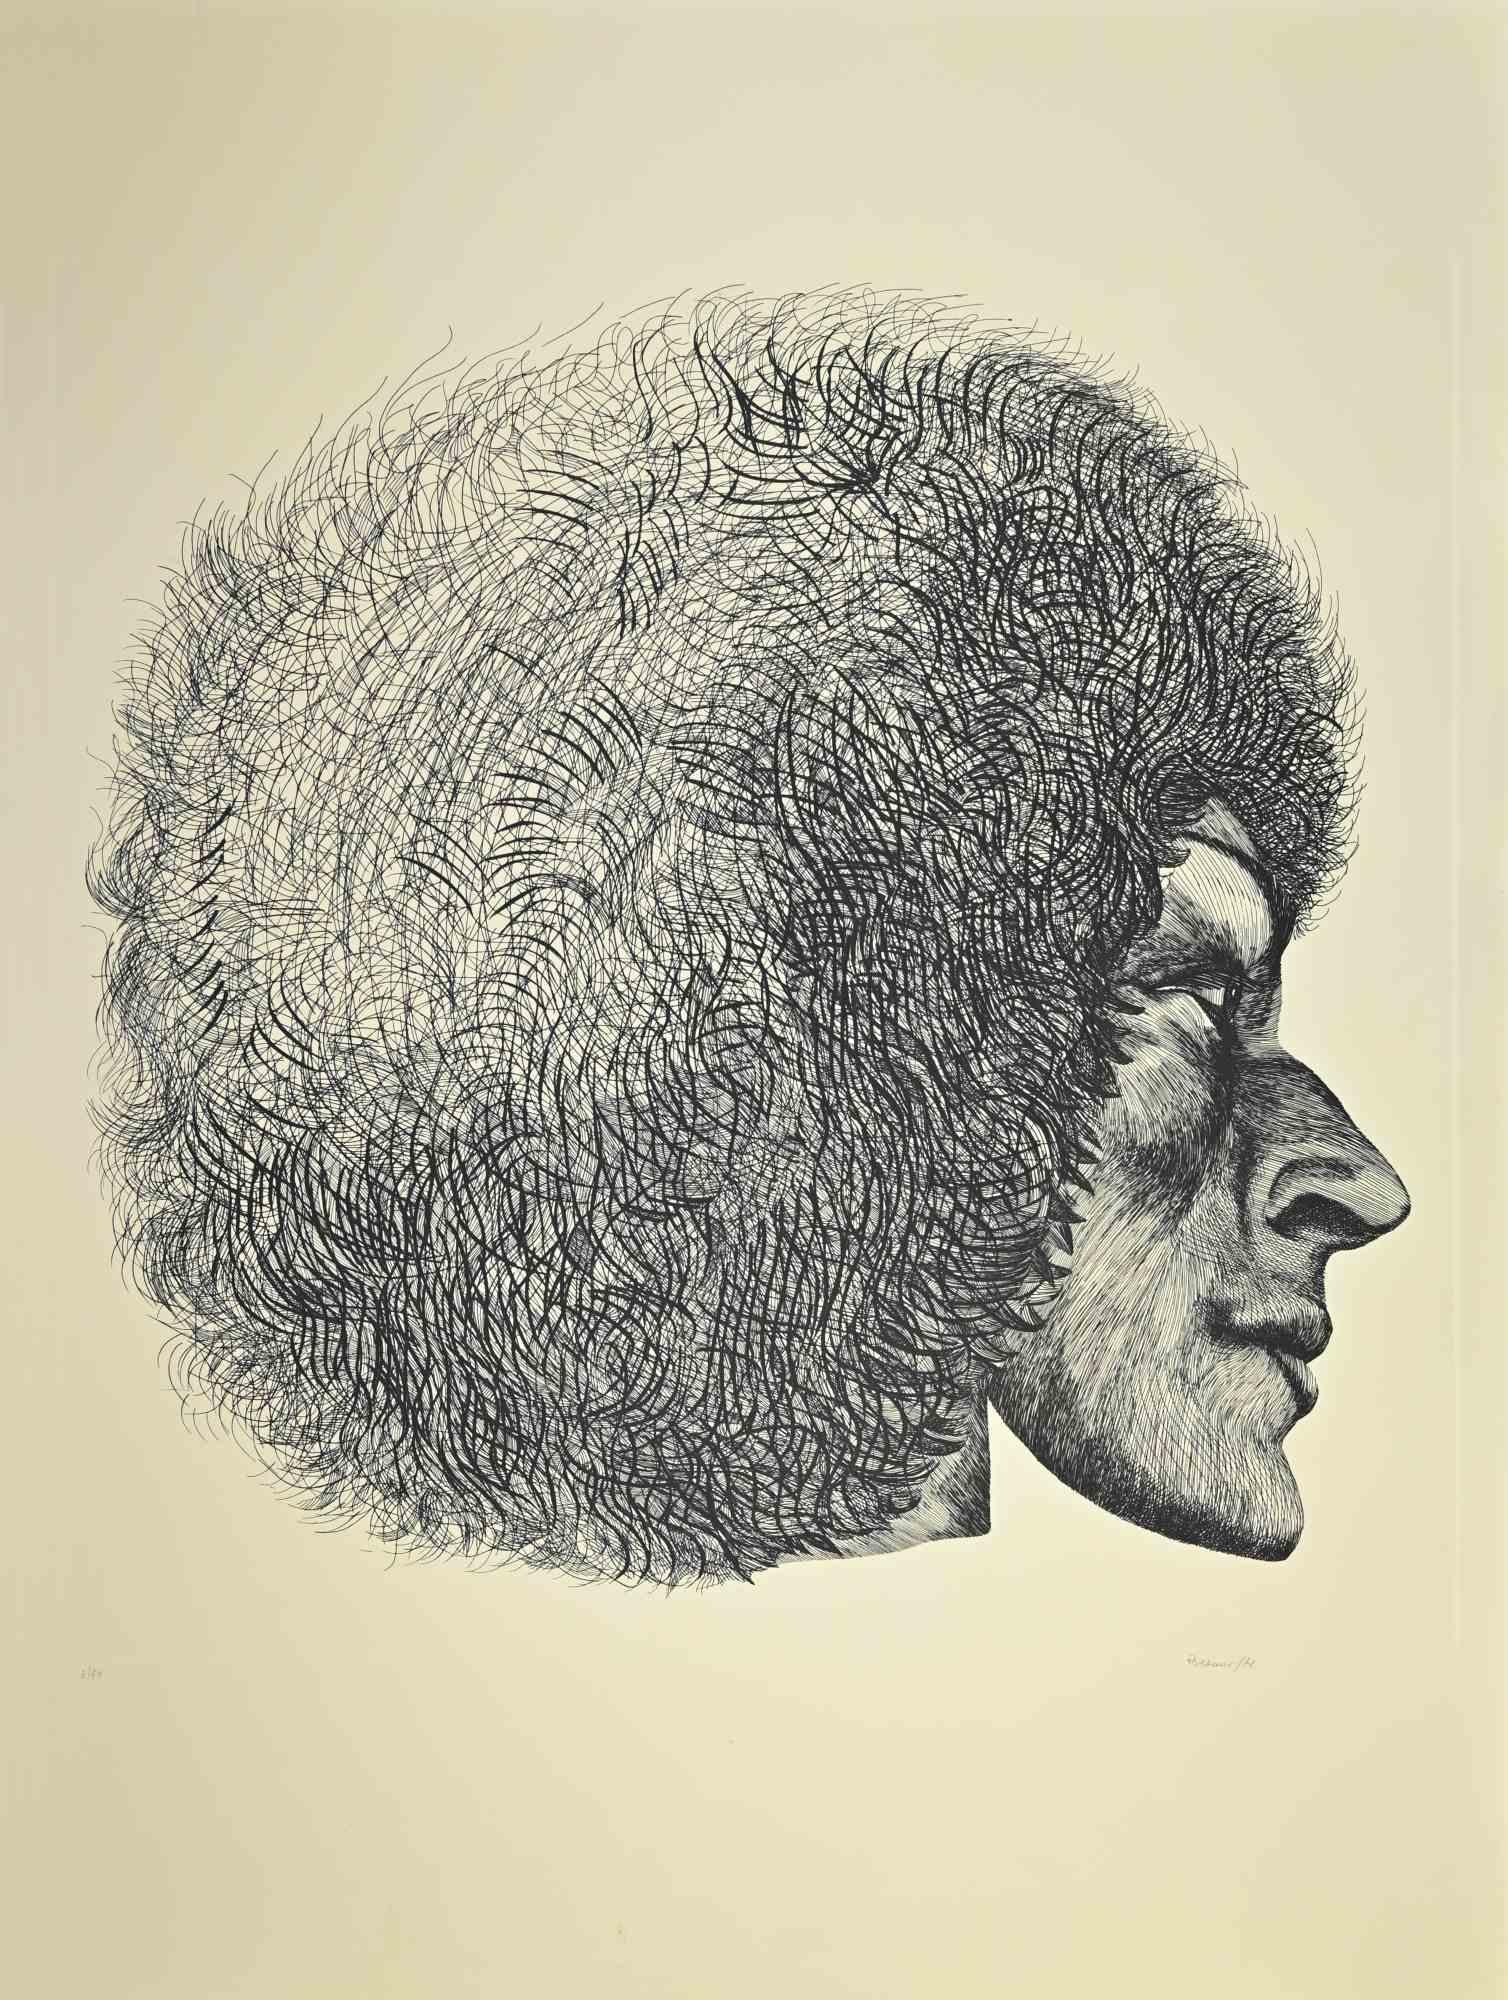 A.Profiles est une œuvre d'art contemporain réalisée par Giacomo Porzano en 1972.

Signé à la main, daté et numéroté par l'artiste au crayon.

Édition de 3/50.